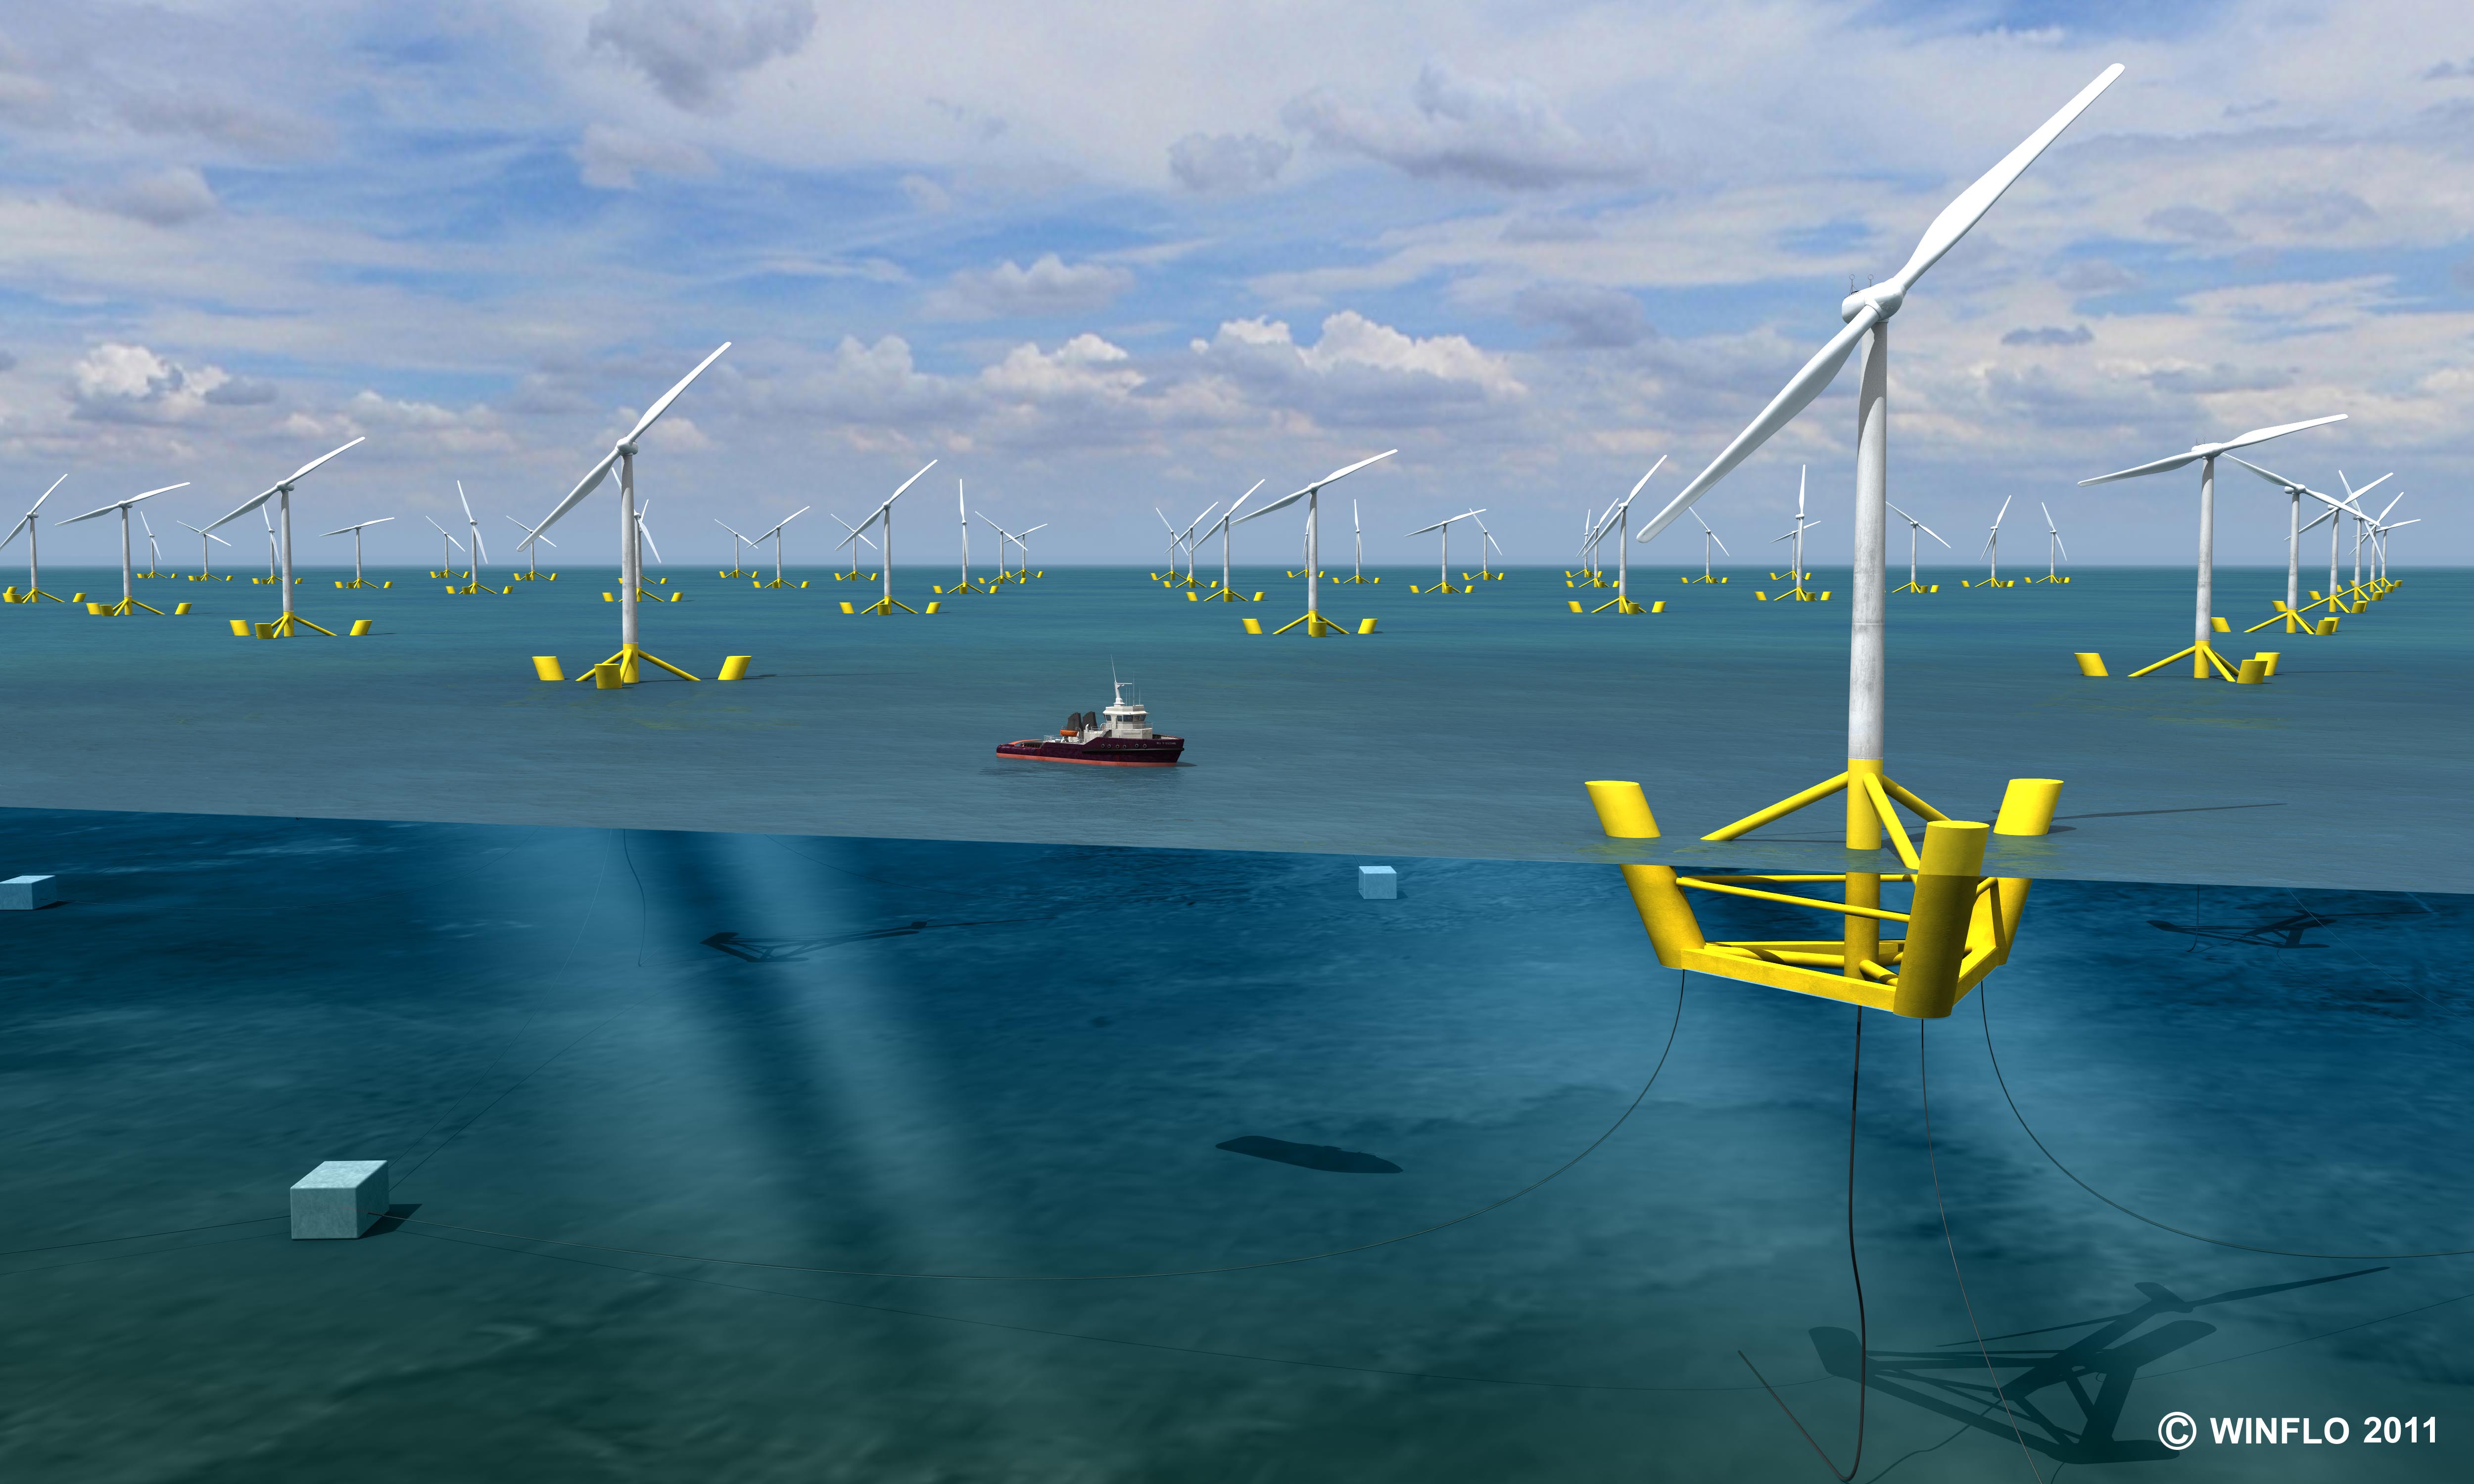 D'ici 2020, l'installation de 100 éoliennes Winflo au large de la Bretagne, ce qui représenterait un parc de 500 MW, pourrait fournir 10 % des besoins énergétiques de cette région. © Winflo, 2011